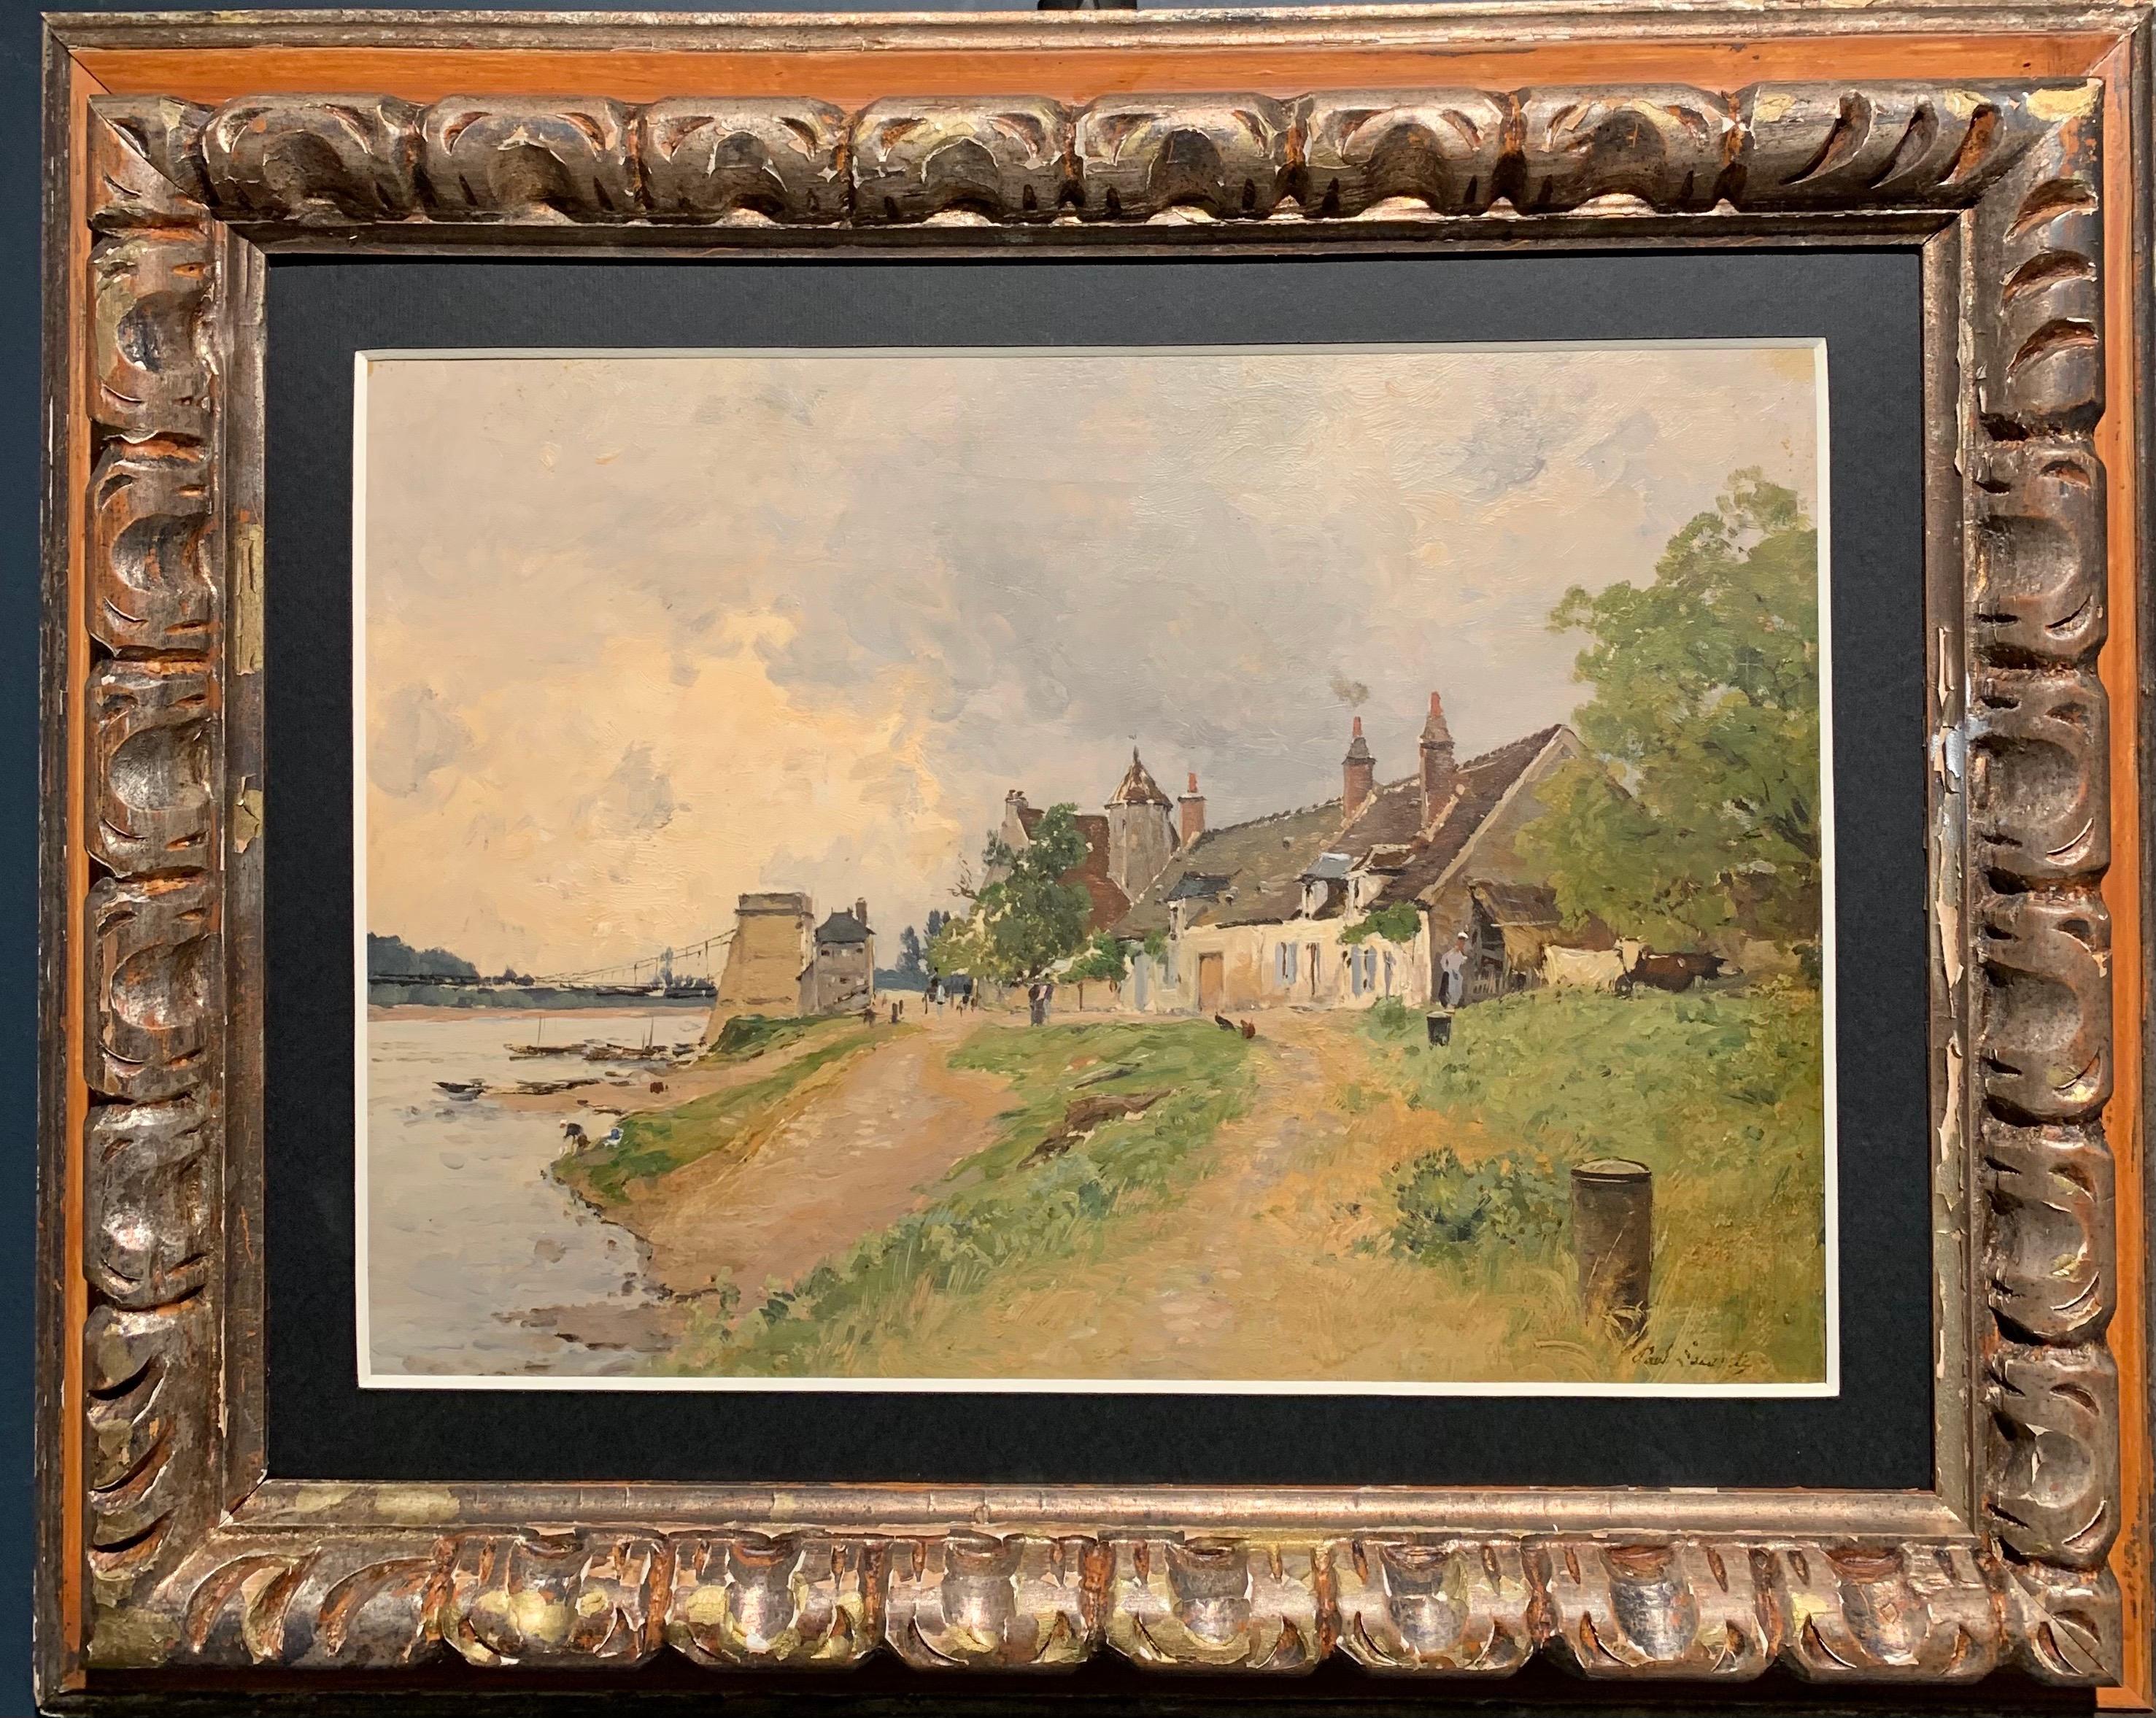 Landscape Painting Paul Lecomte - "Village au bord de riviere" , France, huile 36 cm x 26 cm, livraison gratuite vers 1880